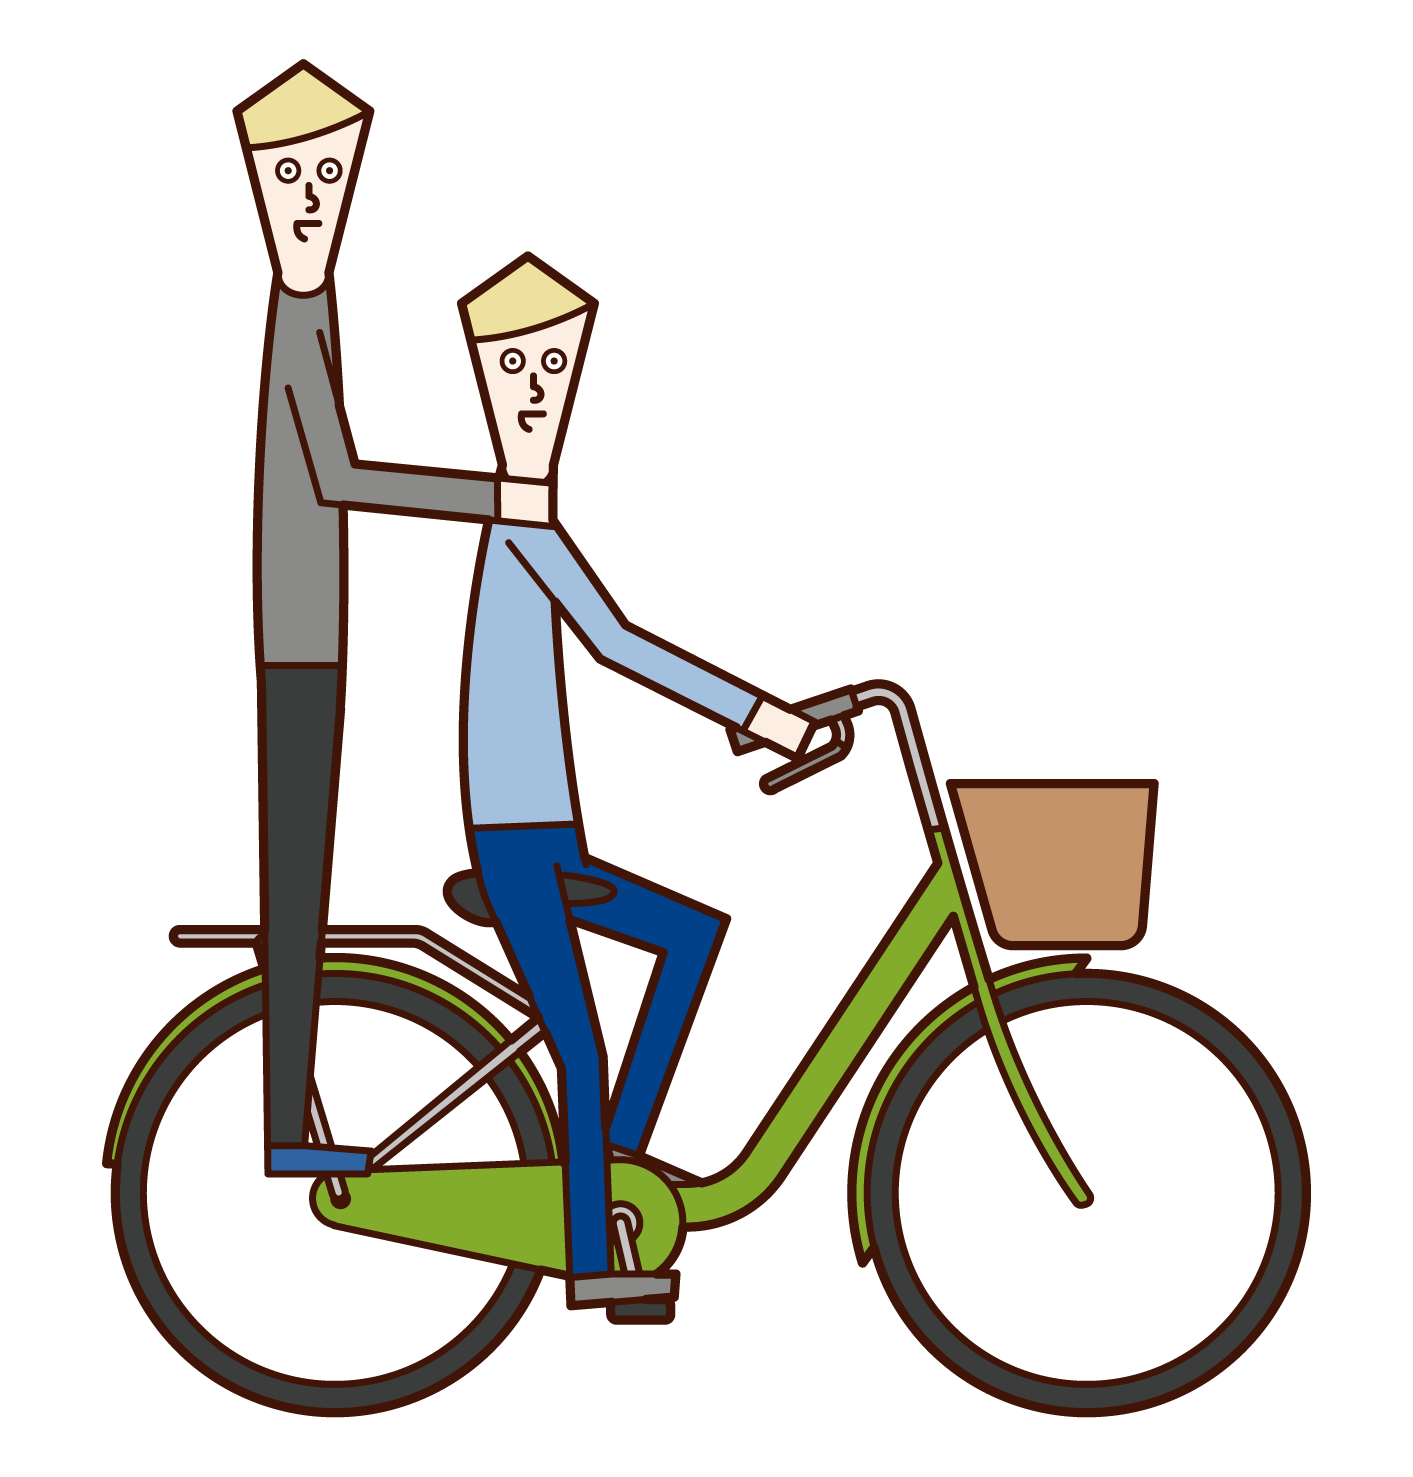 自転車に二人乗りする人たちのイラスト フリーイラスト素材集 Kukukeke